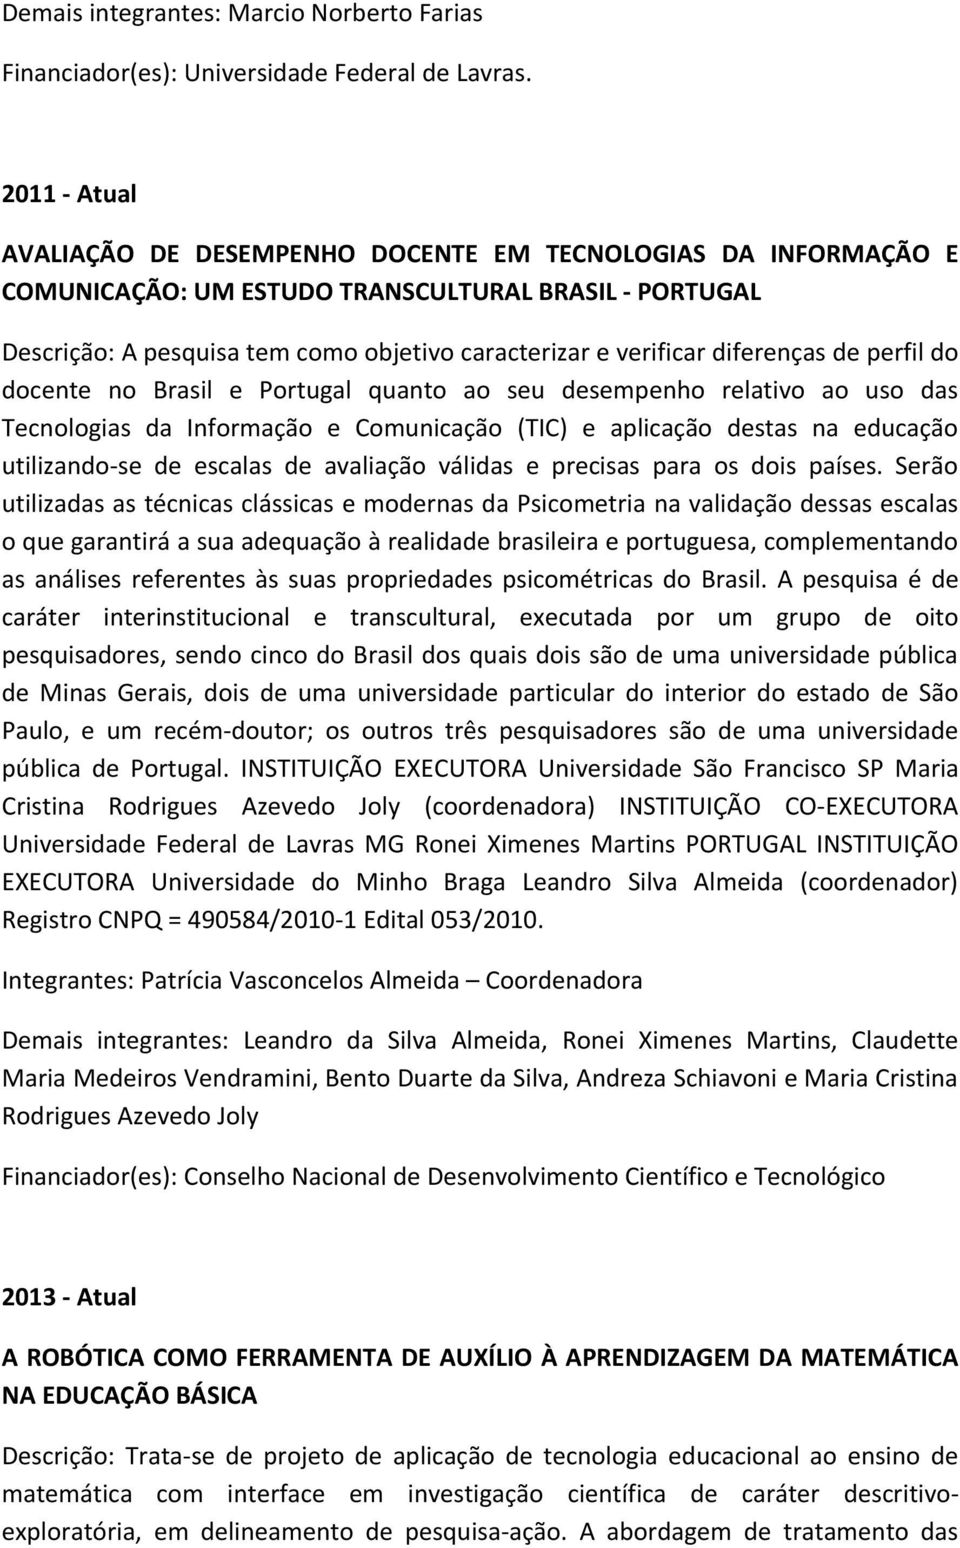 diferenças de perfil do docente no Brasil e Portugal quanto ao seu desempenho relativo ao uso das Tecnologias da Informação e Comunicação (TIC) e aplicação destas na educação utilizando-se de escalas